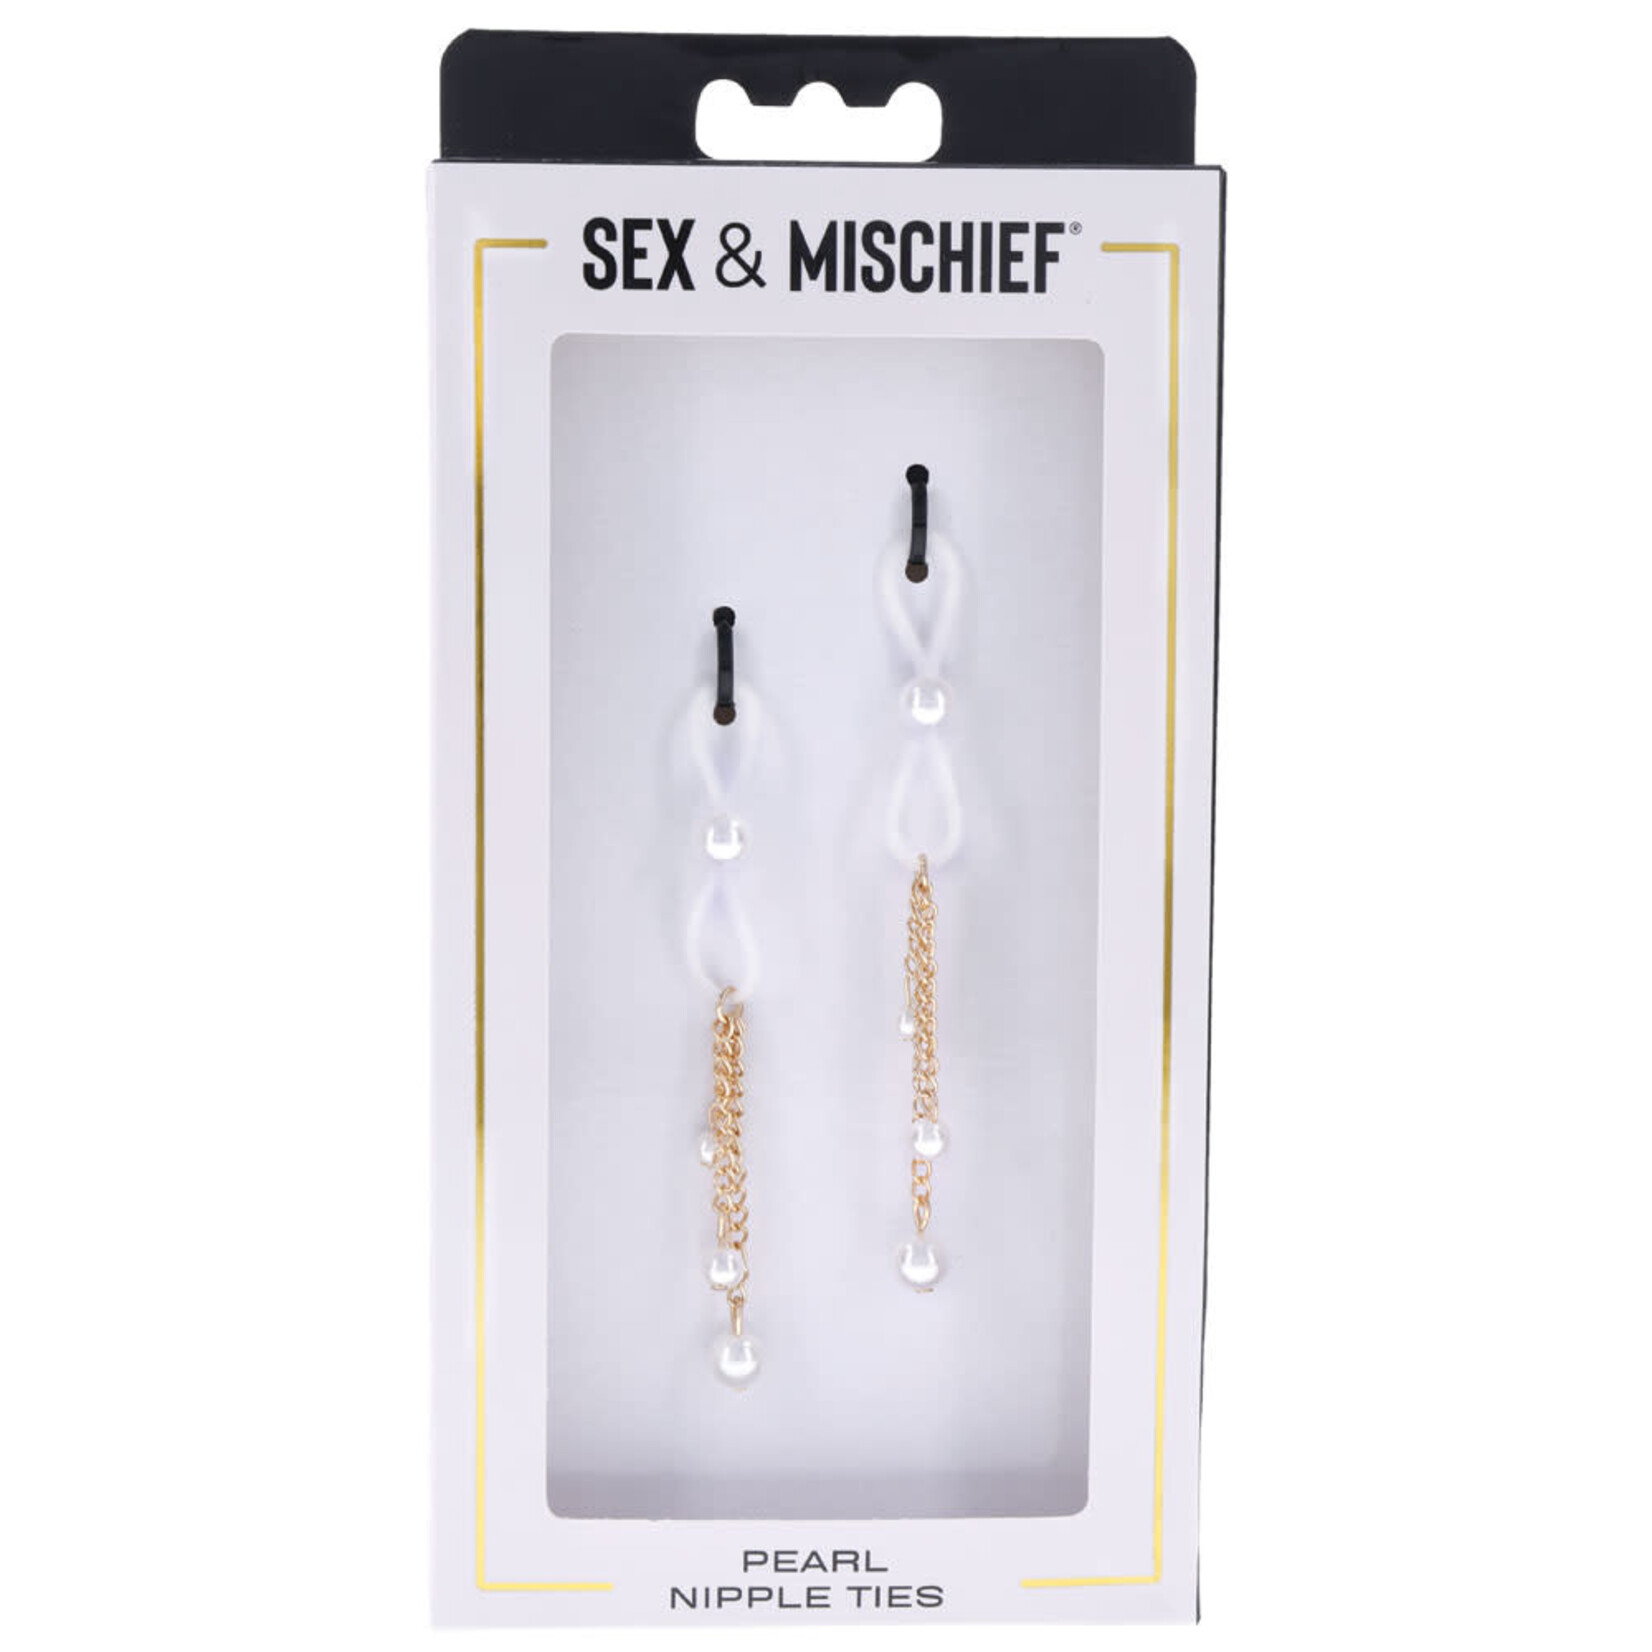 SEX & MISCHIEF SEX & MISCHIEF PEARL NIPPLE TIES